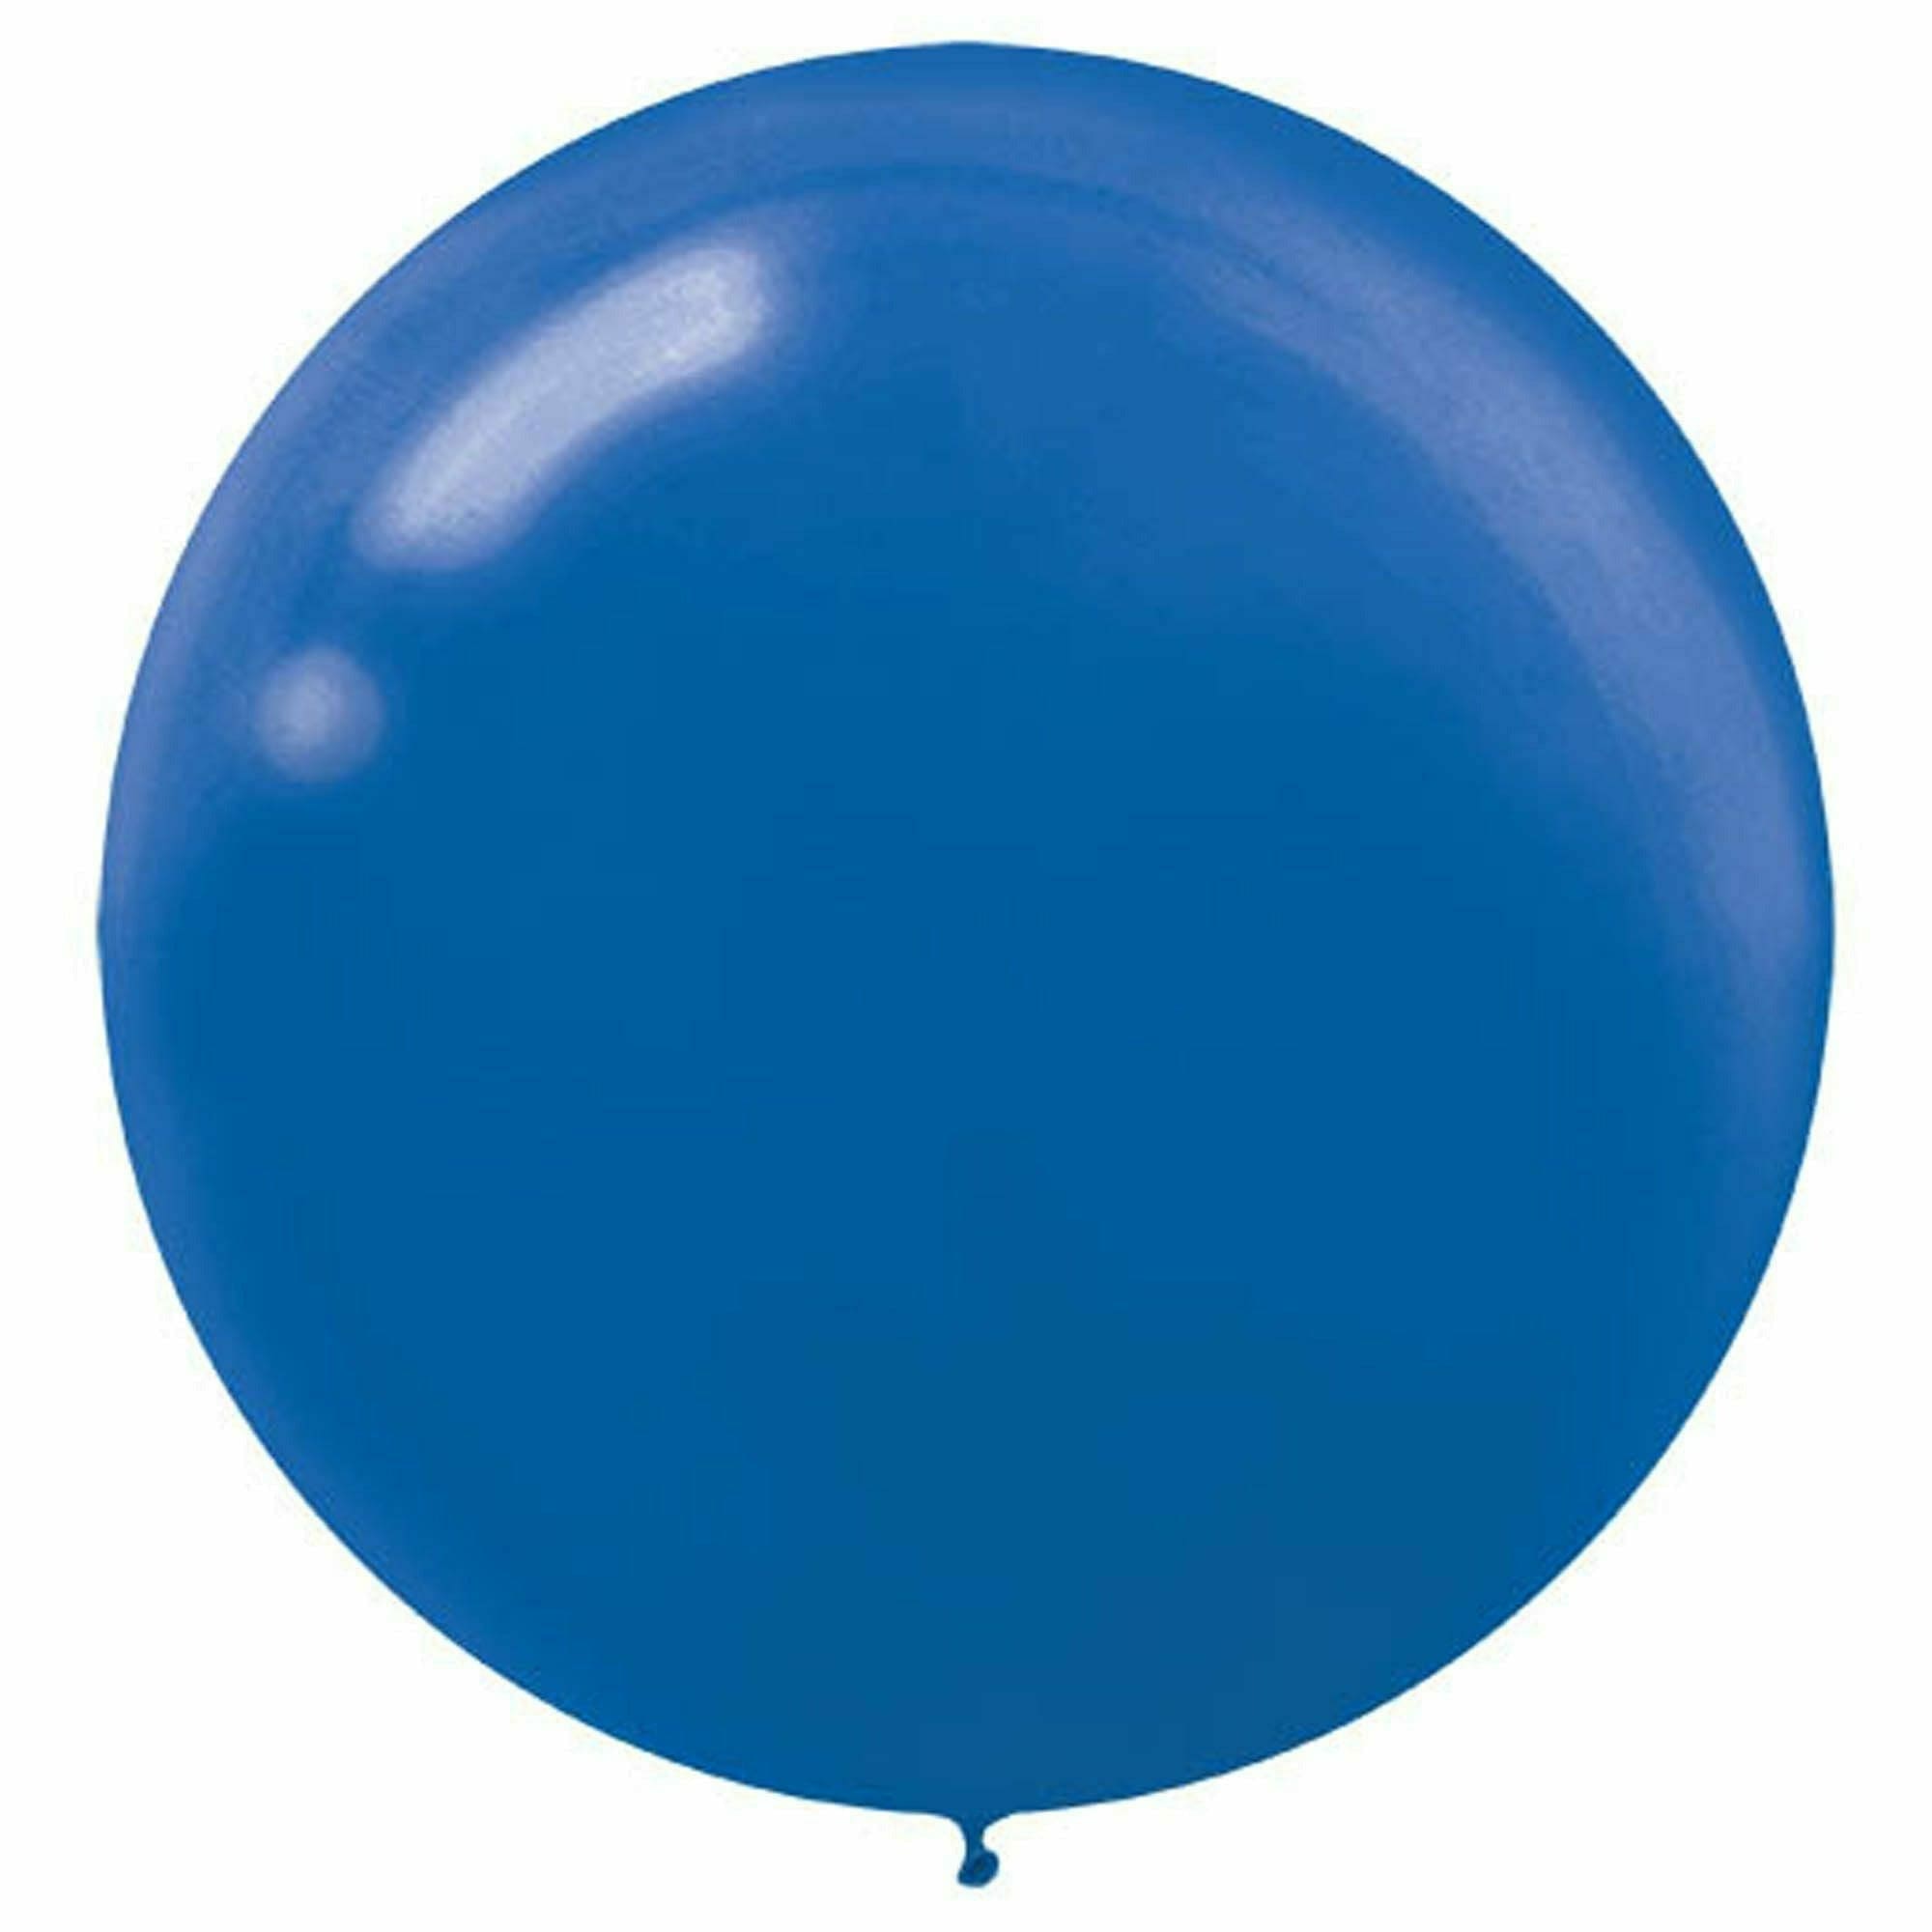 Amscan BALLOONS Round Latex Balloons - Bright Royal Blue - 24"